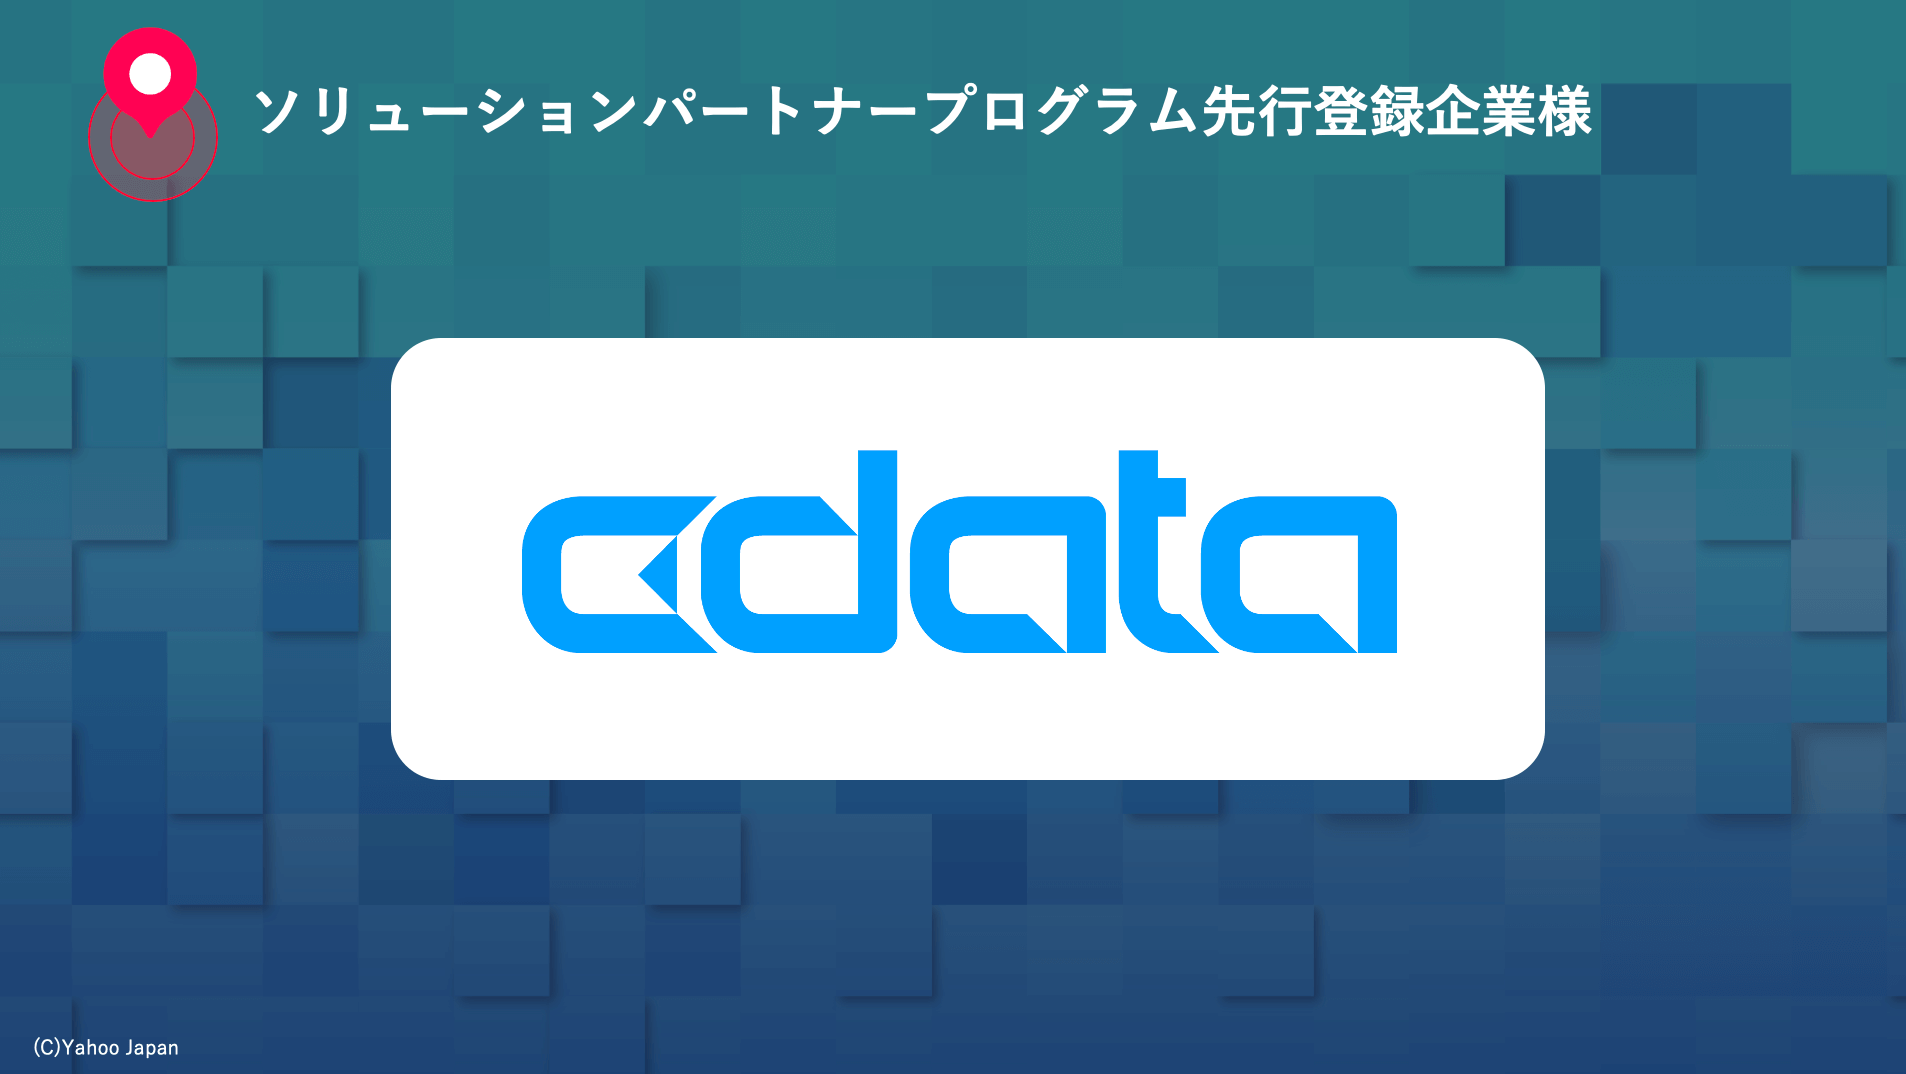 CData はソリューションパートナープログラム先行登録企業